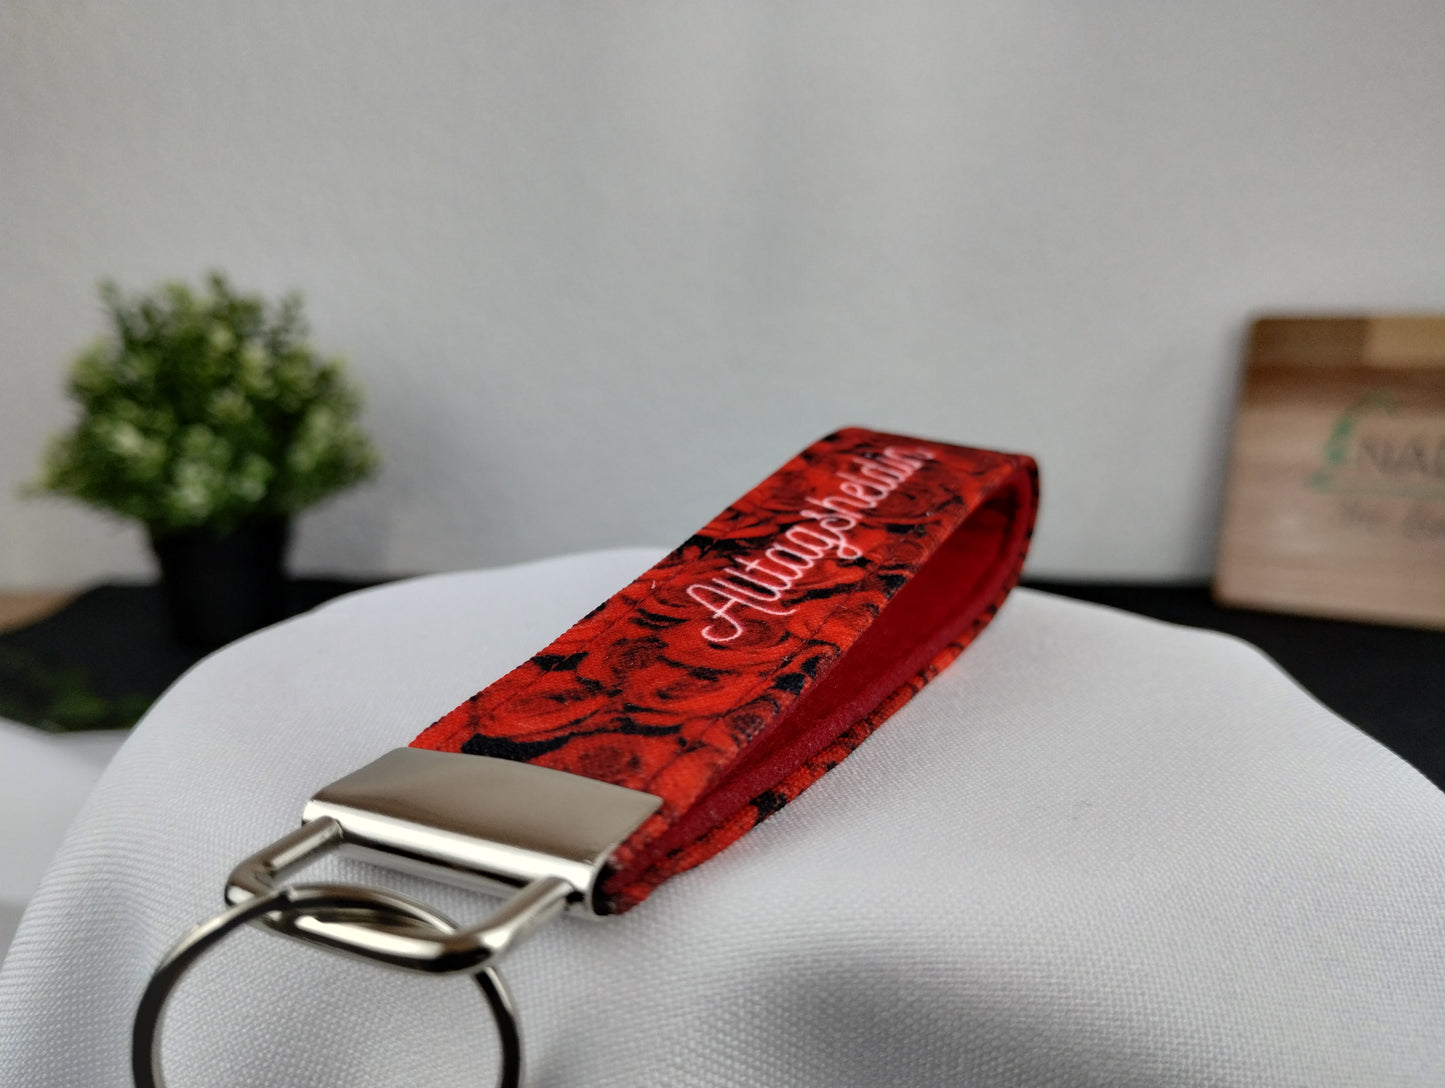 Personalisierbarer Schlüsselanhänger mit roten Rosen, weißer Schrift und innen mit rotem Filz